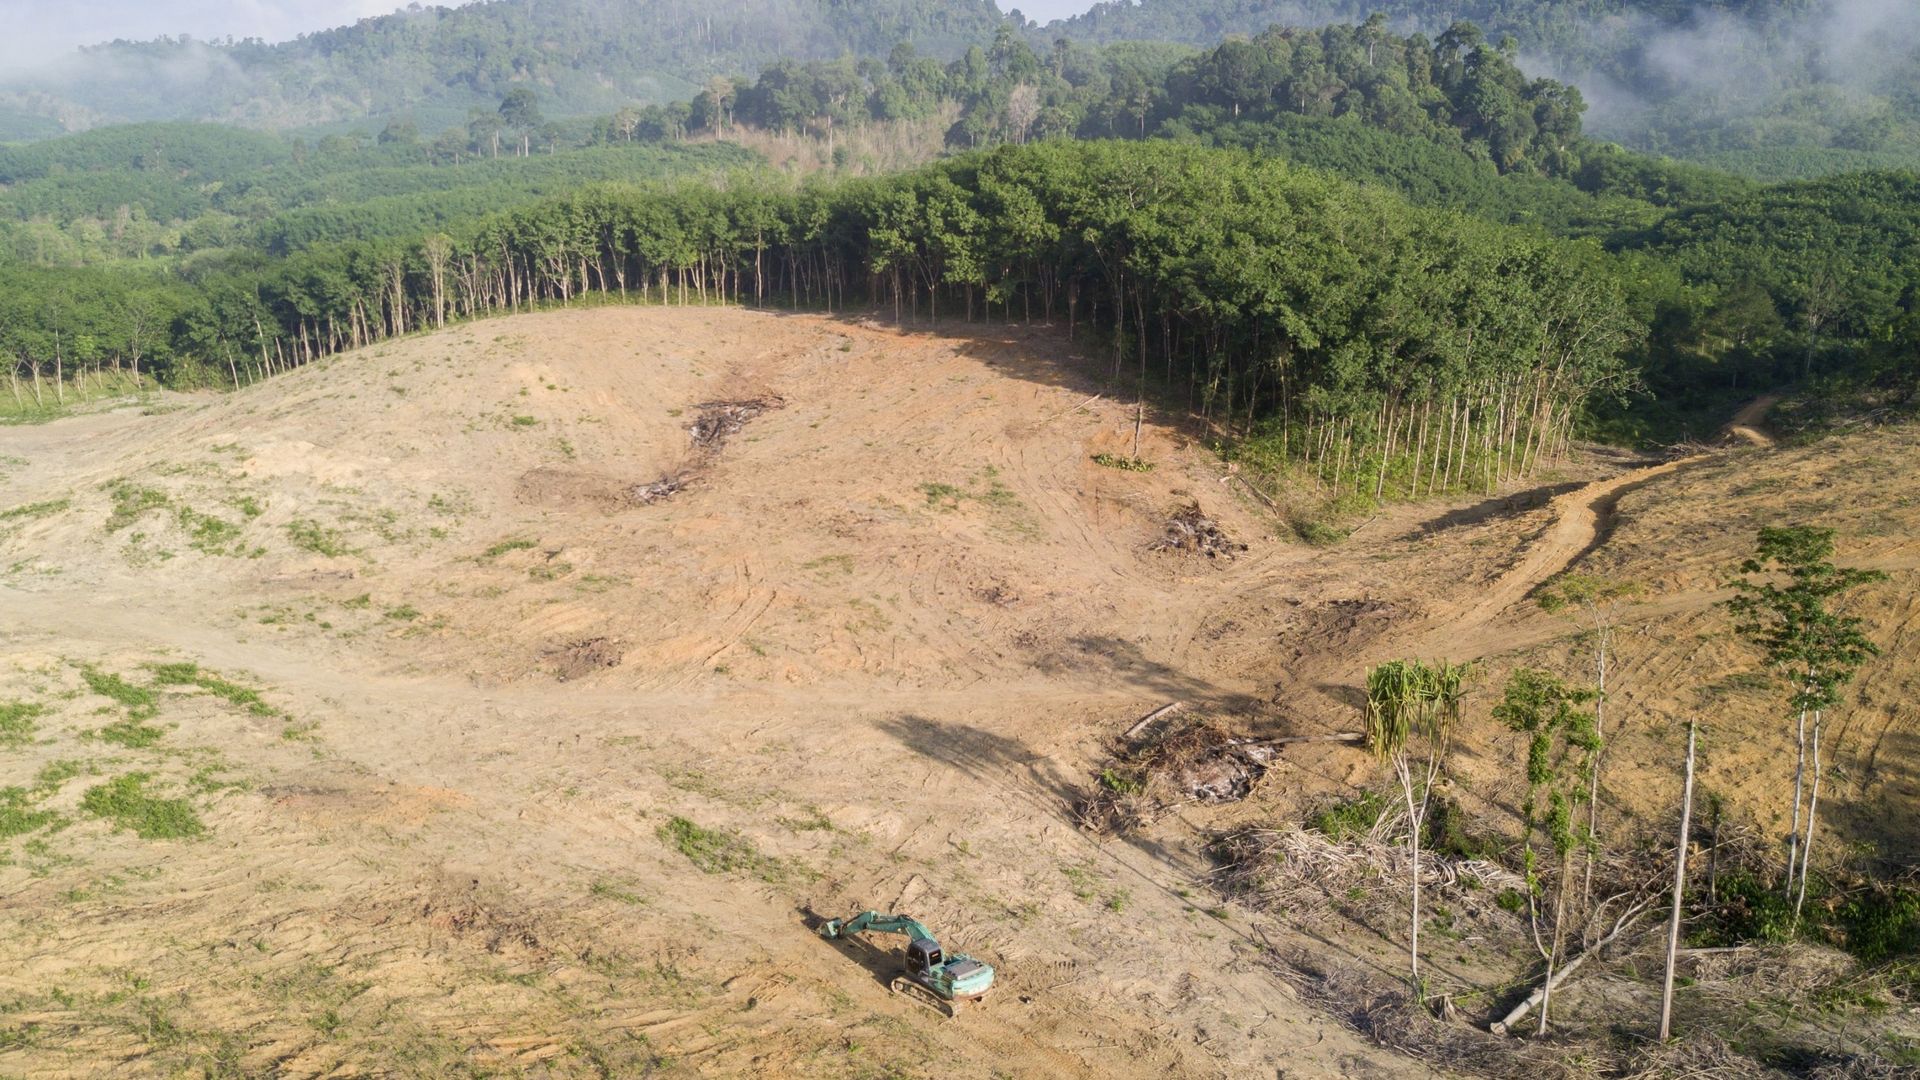 Déforestation dans la jungle de Bornéo (Malaisie) pour la production d’huile de palme.